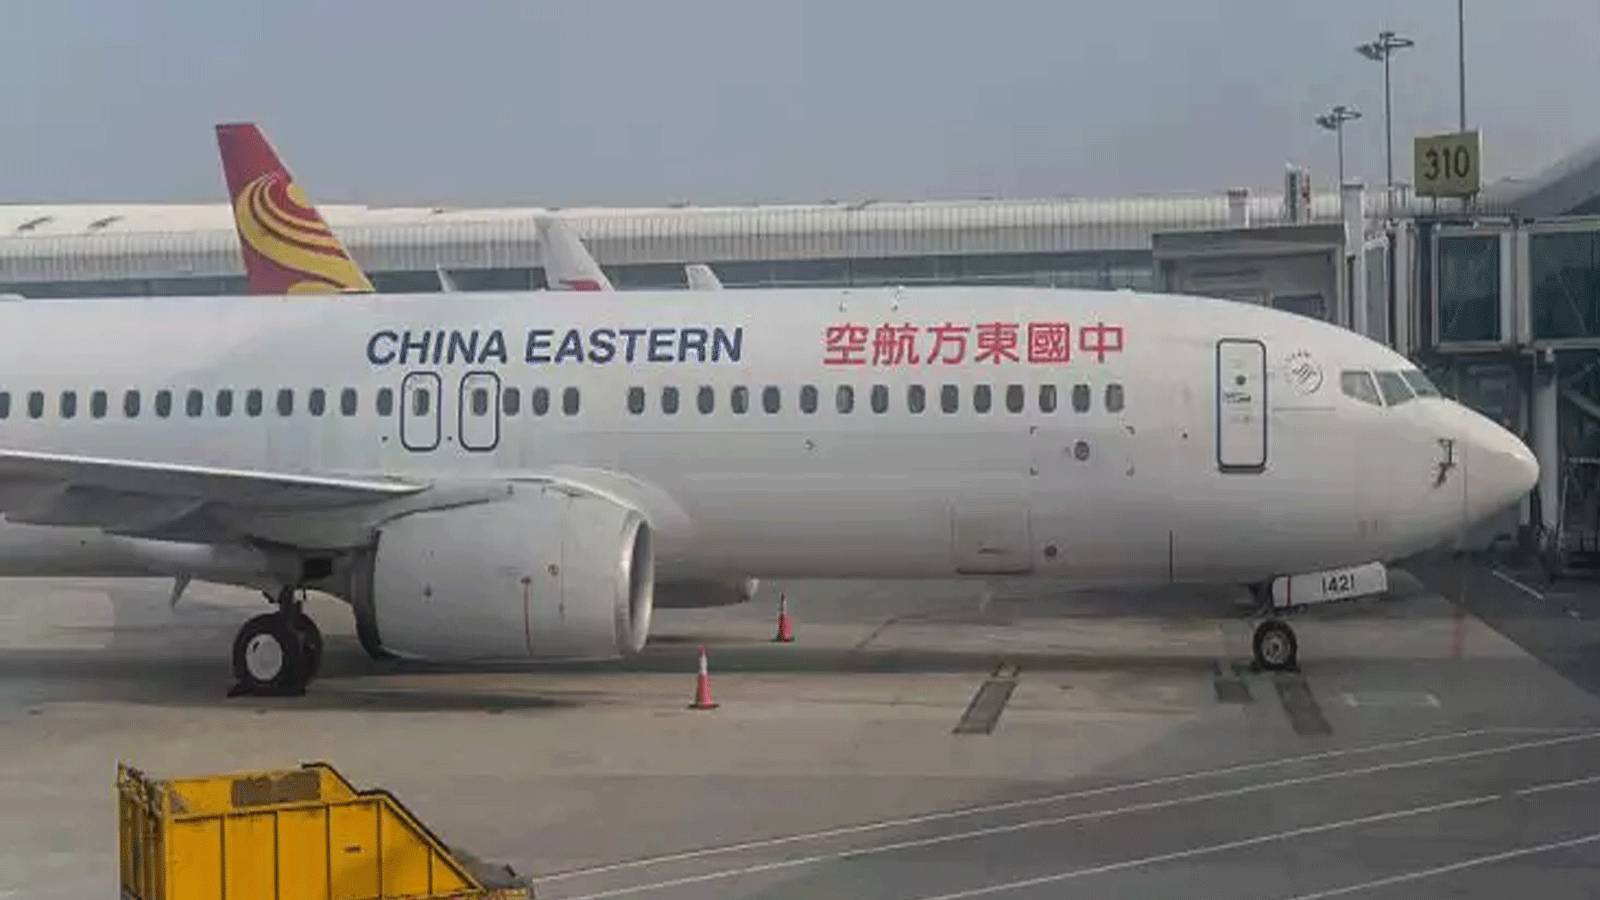 طائرة بوينج 737-800 تابعة للخطوط الجوية الصينية الشرقية متوقفة في مطار تيانخه الدولي في ووهان، الصين